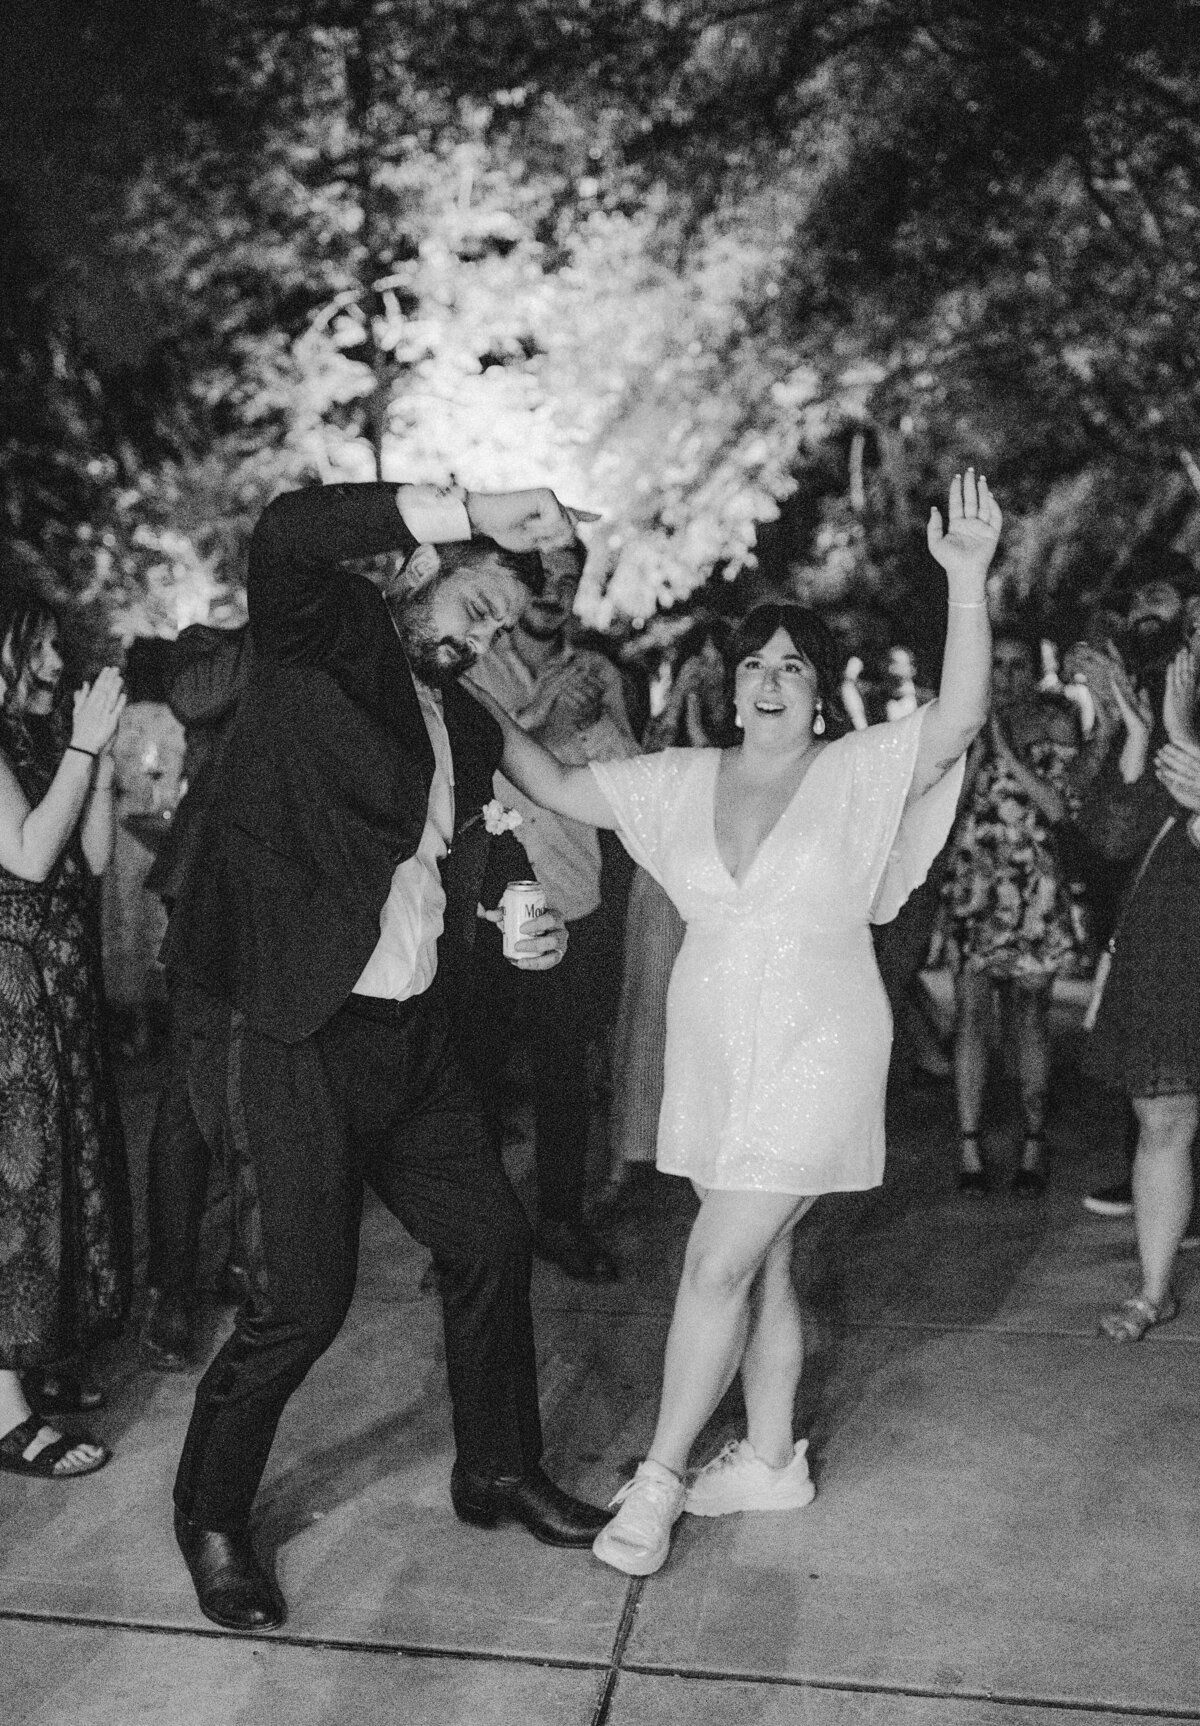 Bride and groom dancing at wedding reception at Umlauf Sculpture Garden, Austin